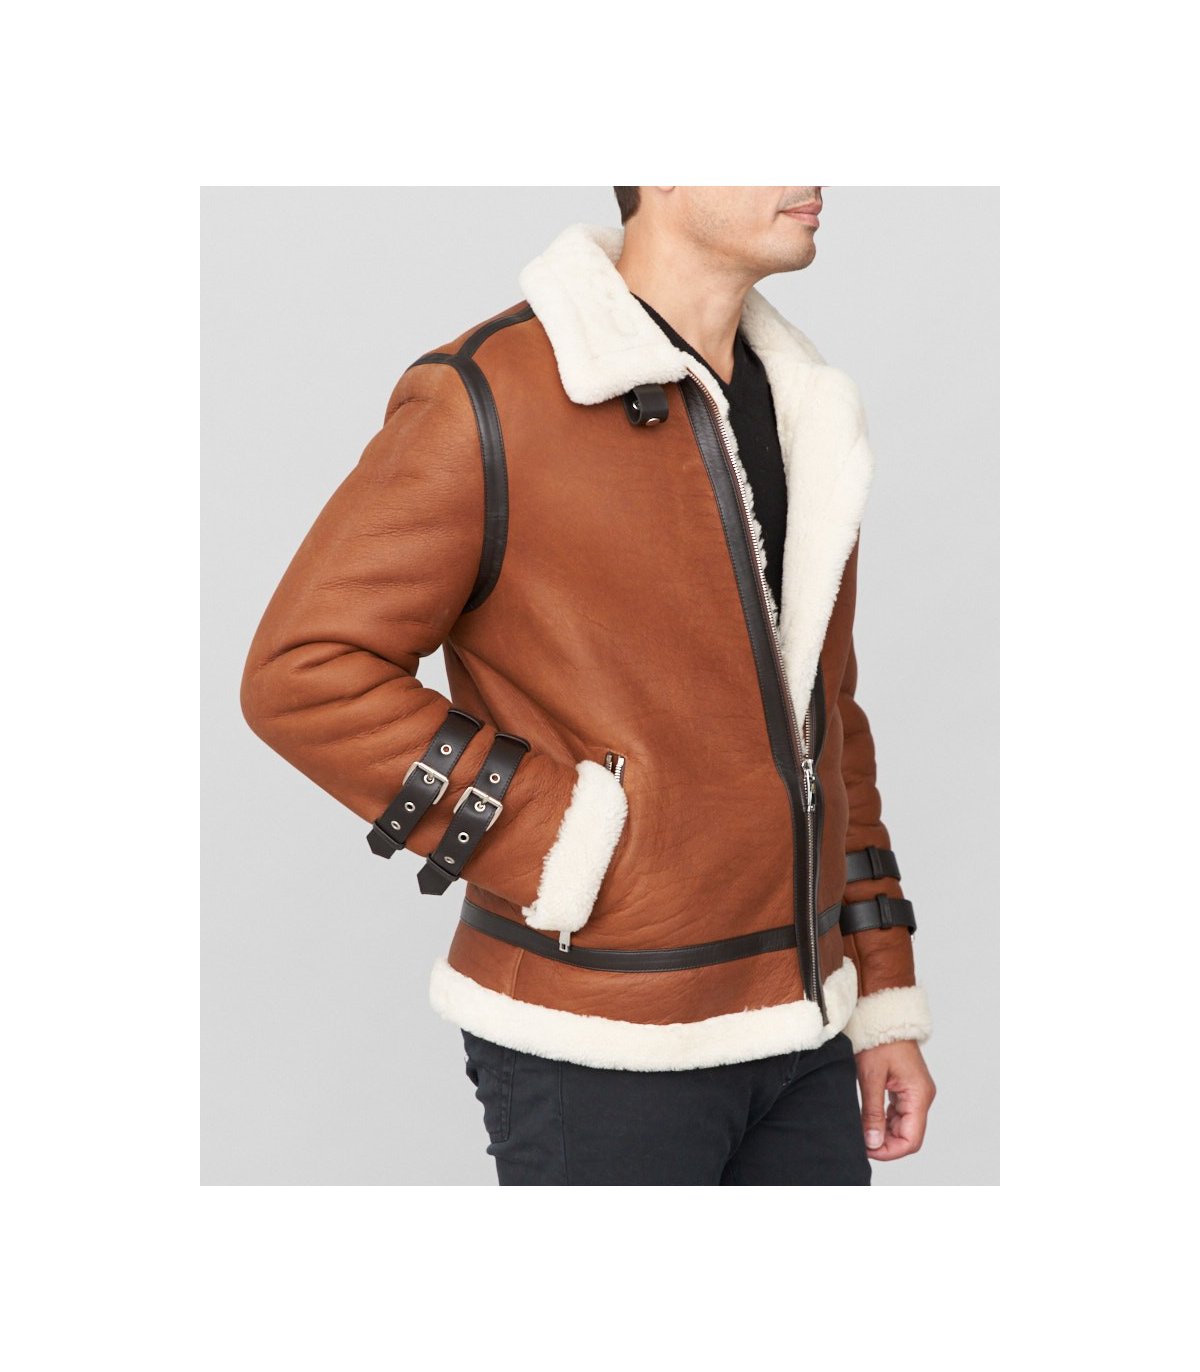 Shearling Sheepskin Moto Jacket in Brown: FurSource.com